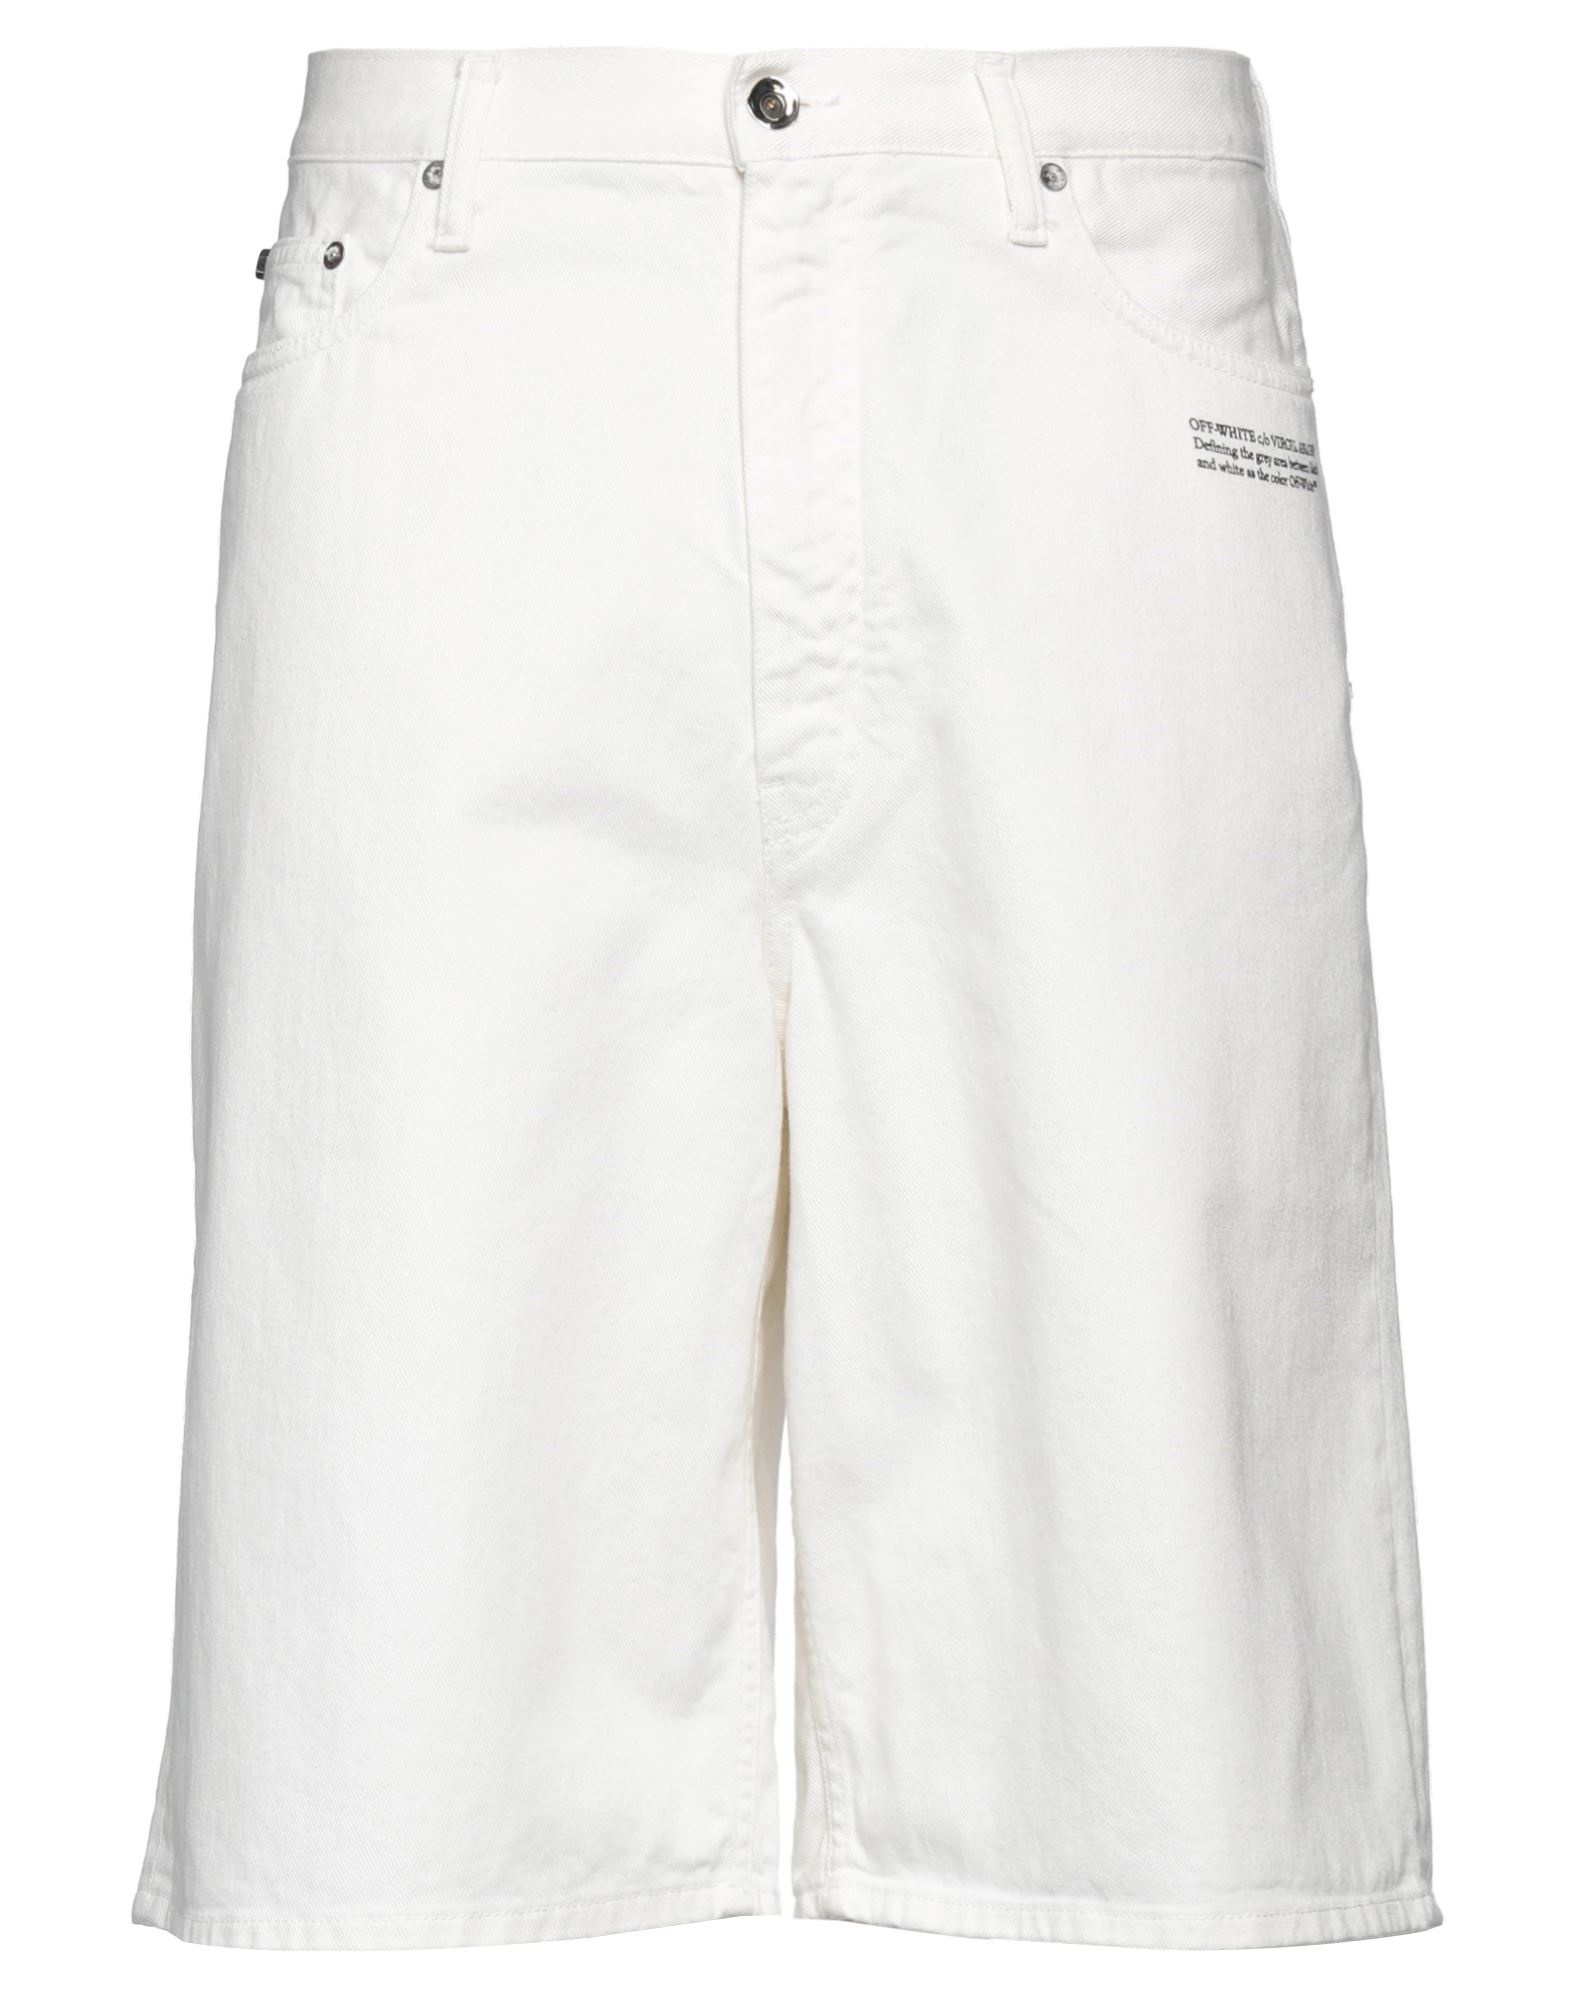 Off-white Man Denim Shorts White Size 29 Cotton